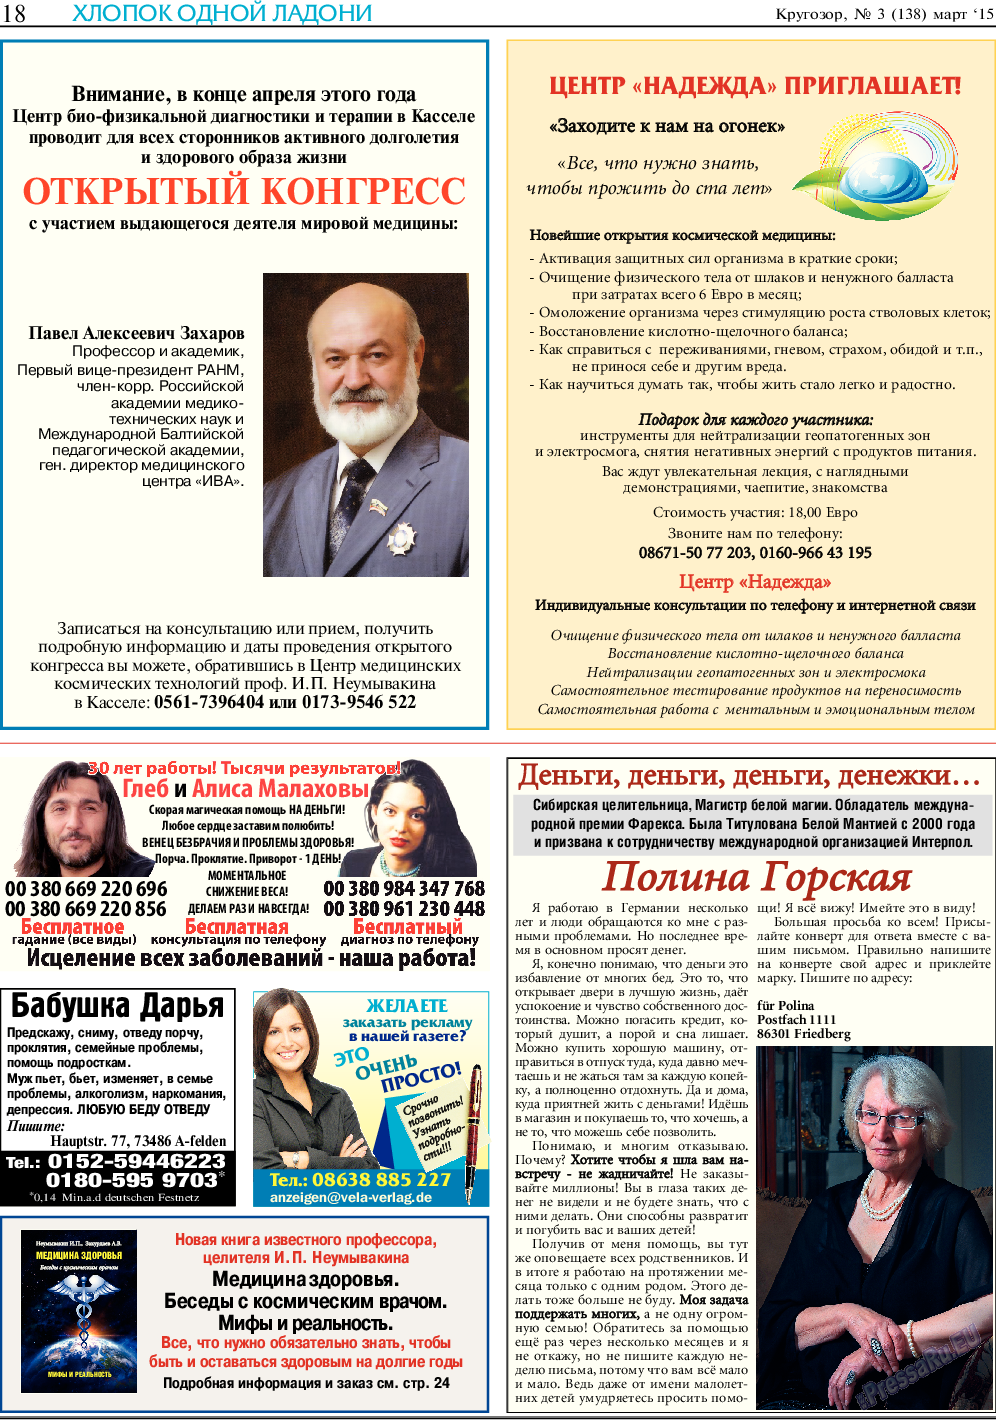 Кругозор (газета). 2015 год, номер 3, стр. 18